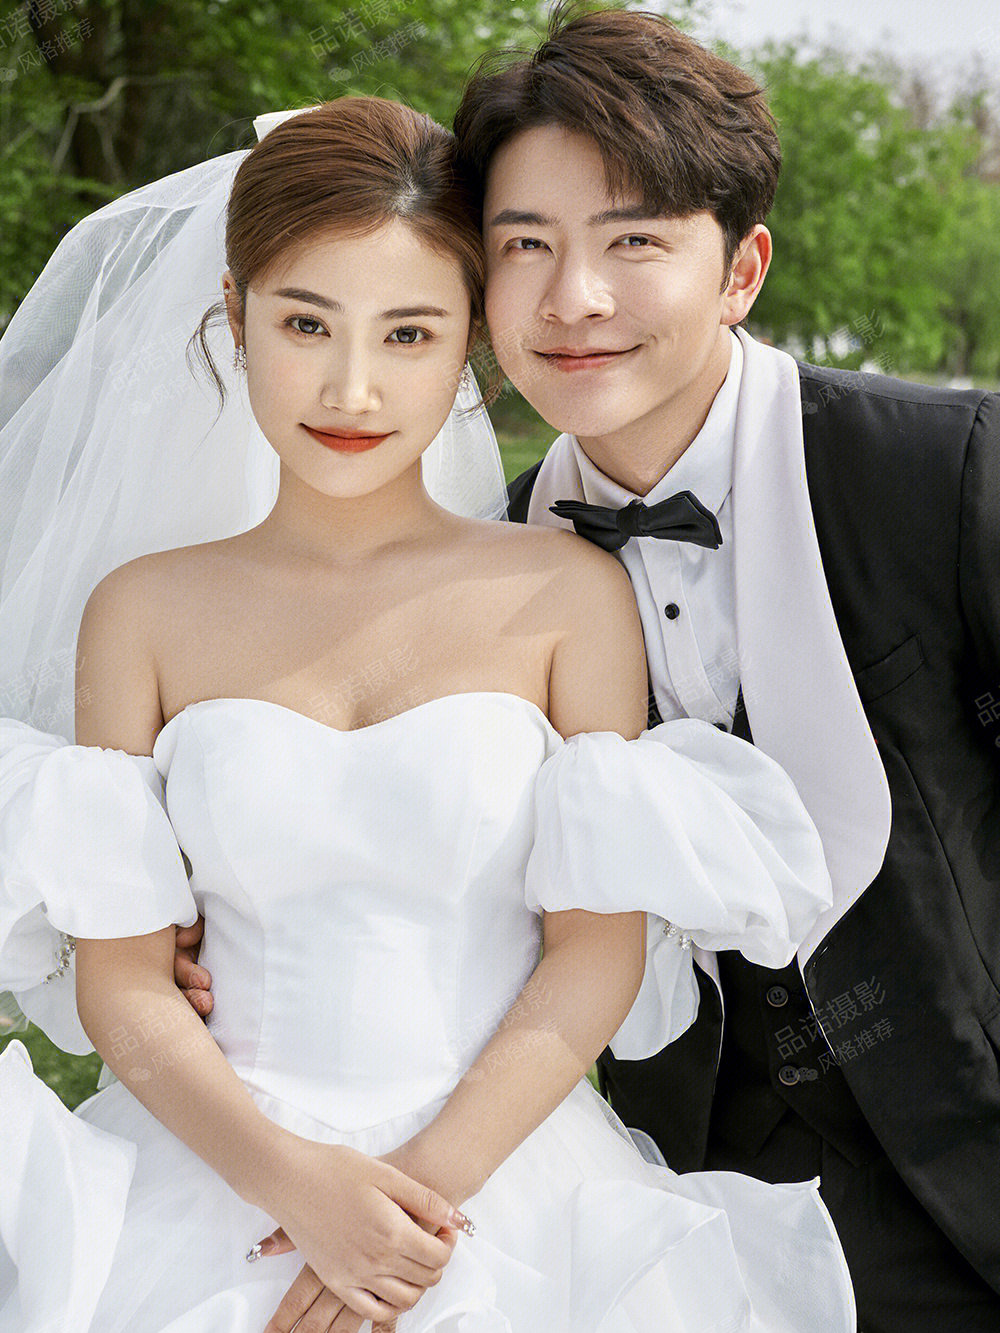 婚纱照十大风格韩式图片